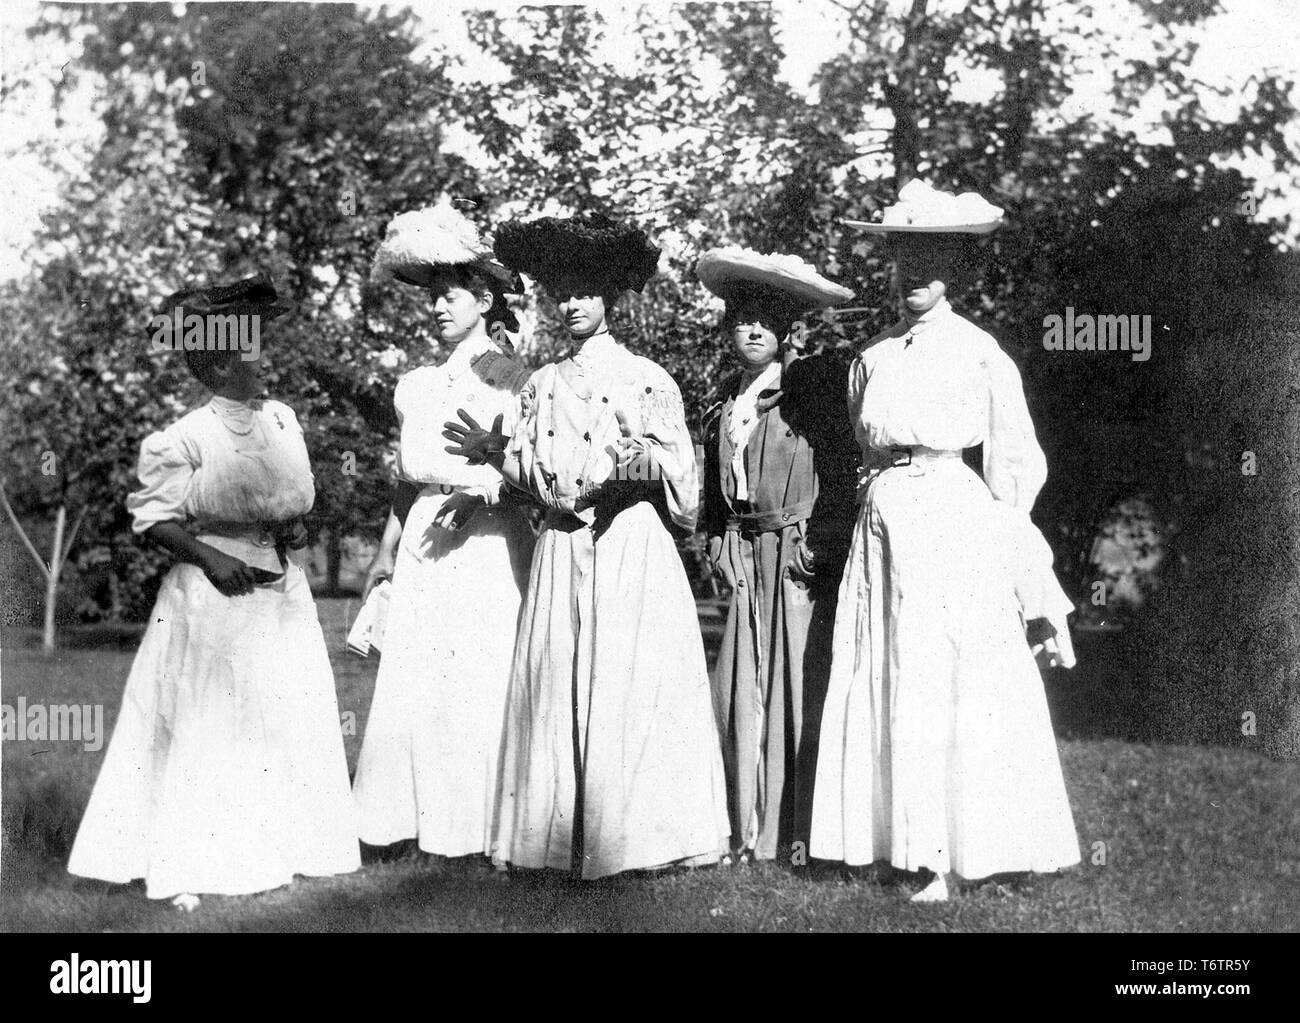 Cinque giovani donne che indossano abiti Eduardiana e cappelli, pongono insieme in un ambiente da giardino, compresa la futura First Lady Bess Truman nee Wallace (secondo da destra) probabilmente fotografato in Missouri, 1905. Immagine cortesia archivi nazionali. () Foto Stock